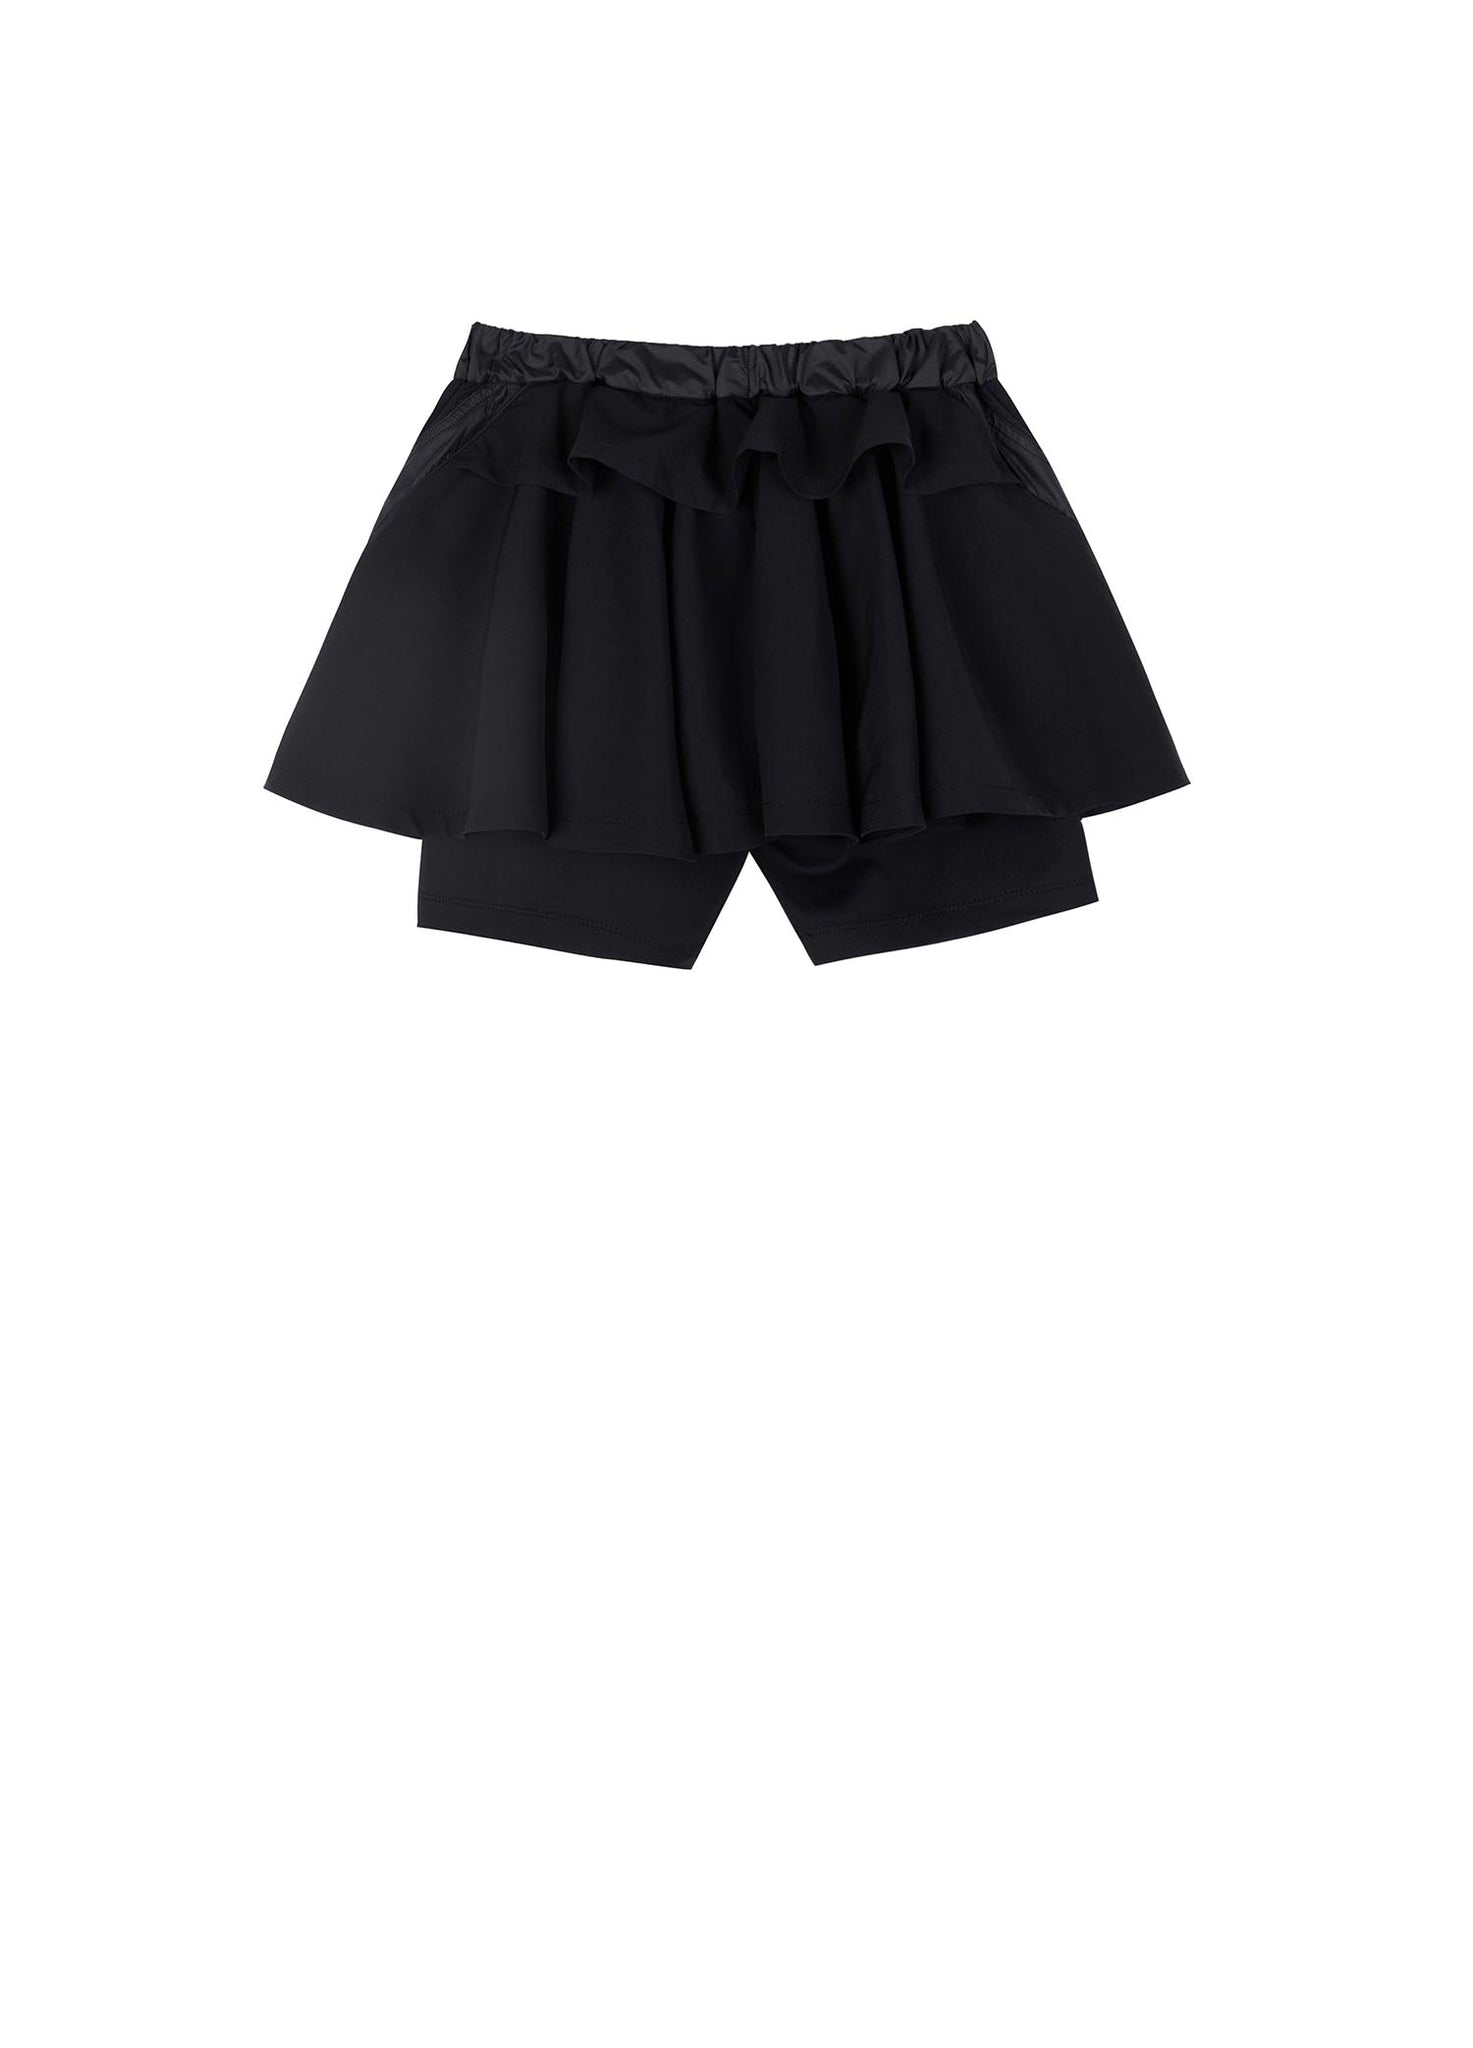 Skirt / jnby by JNBY Elasticated Short Skirt